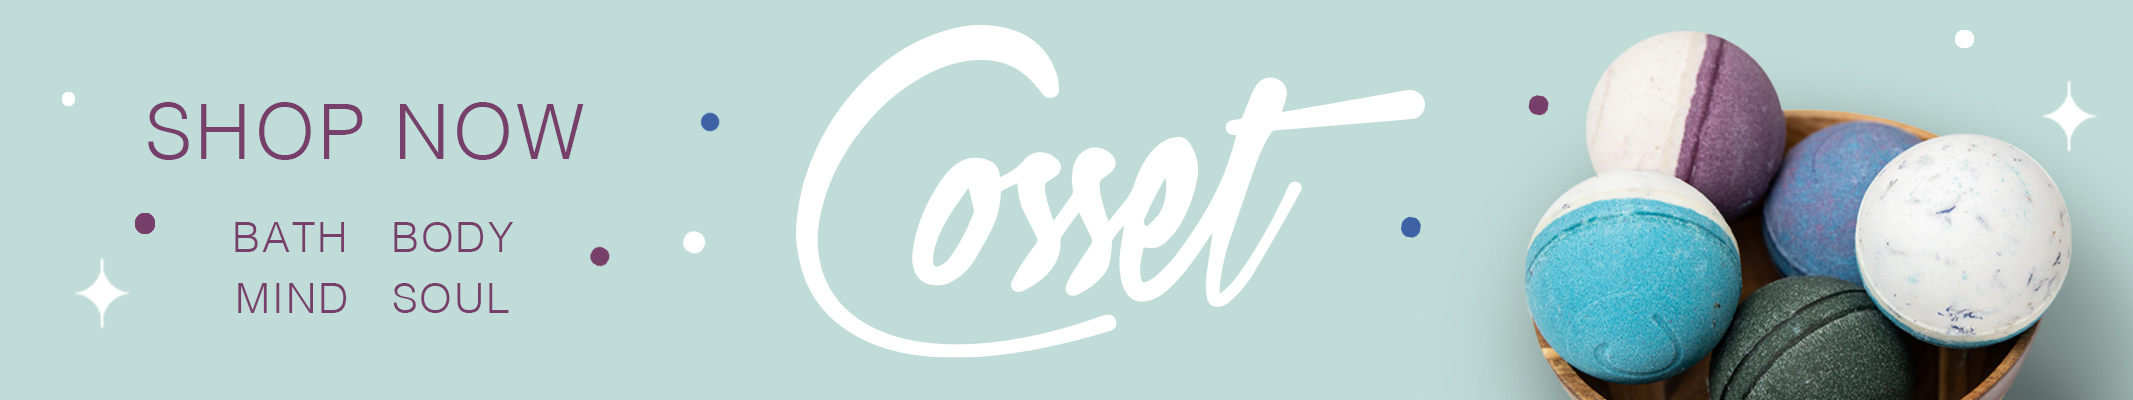 Shop Now - Cosset